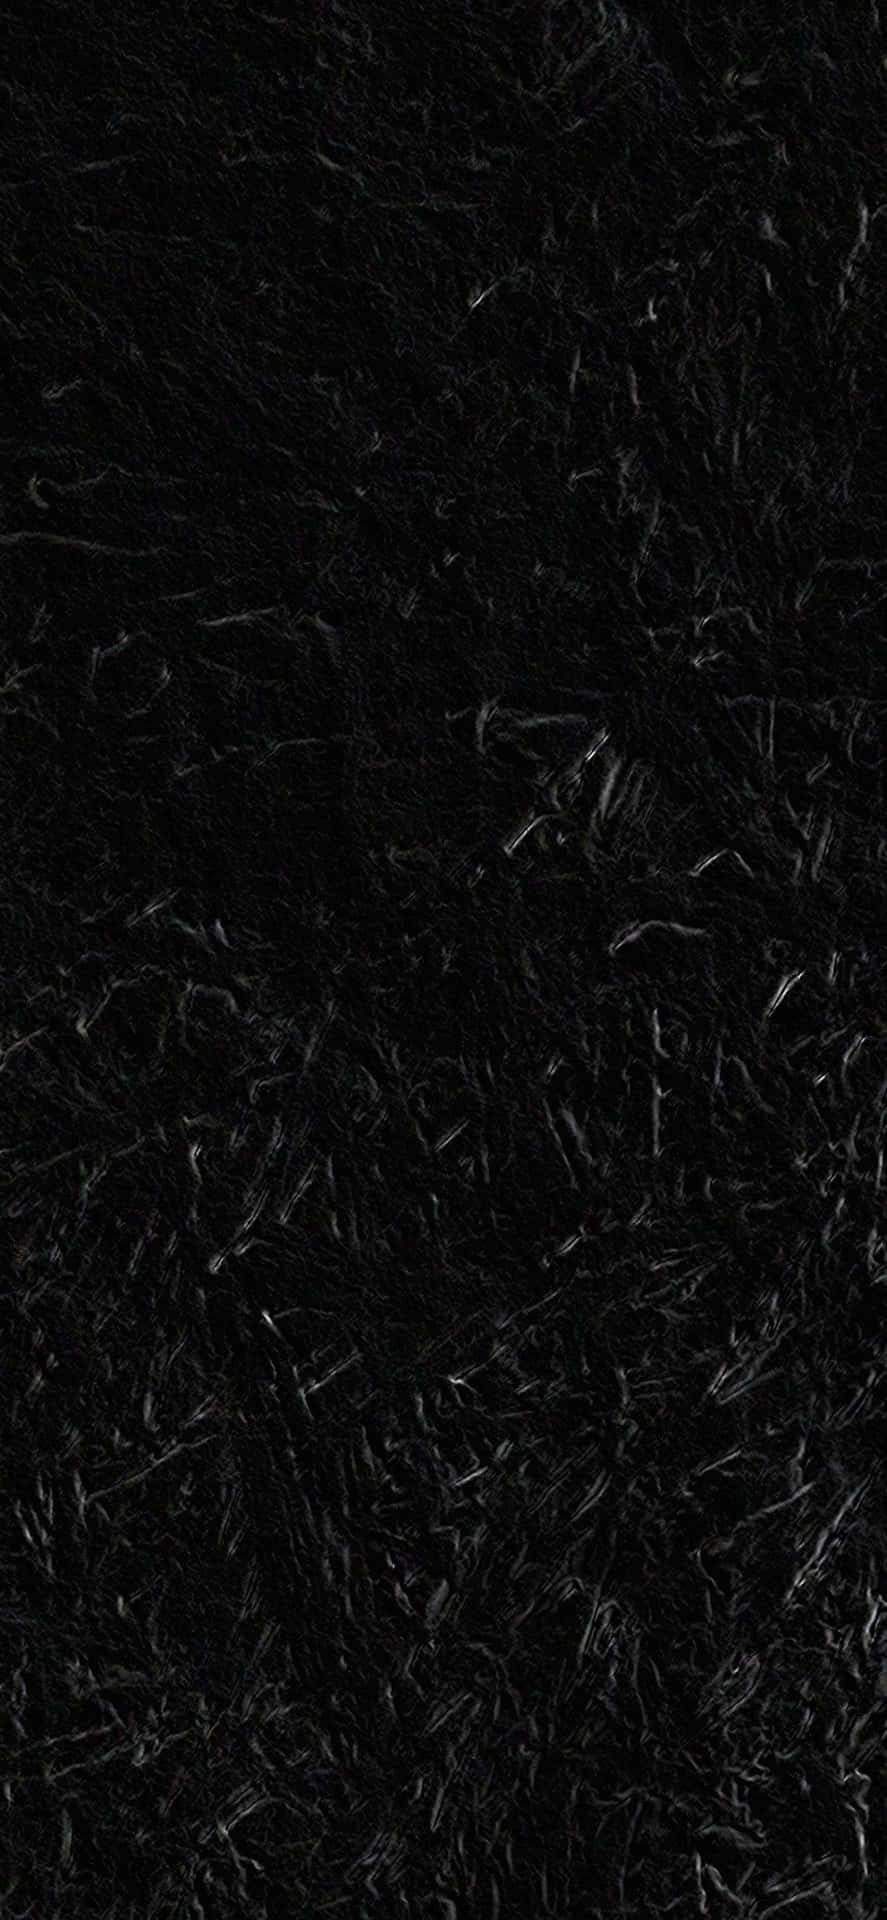 Einschwarzer Teppich Mit Einem Schwarzen Hintergrund. Wallpaper